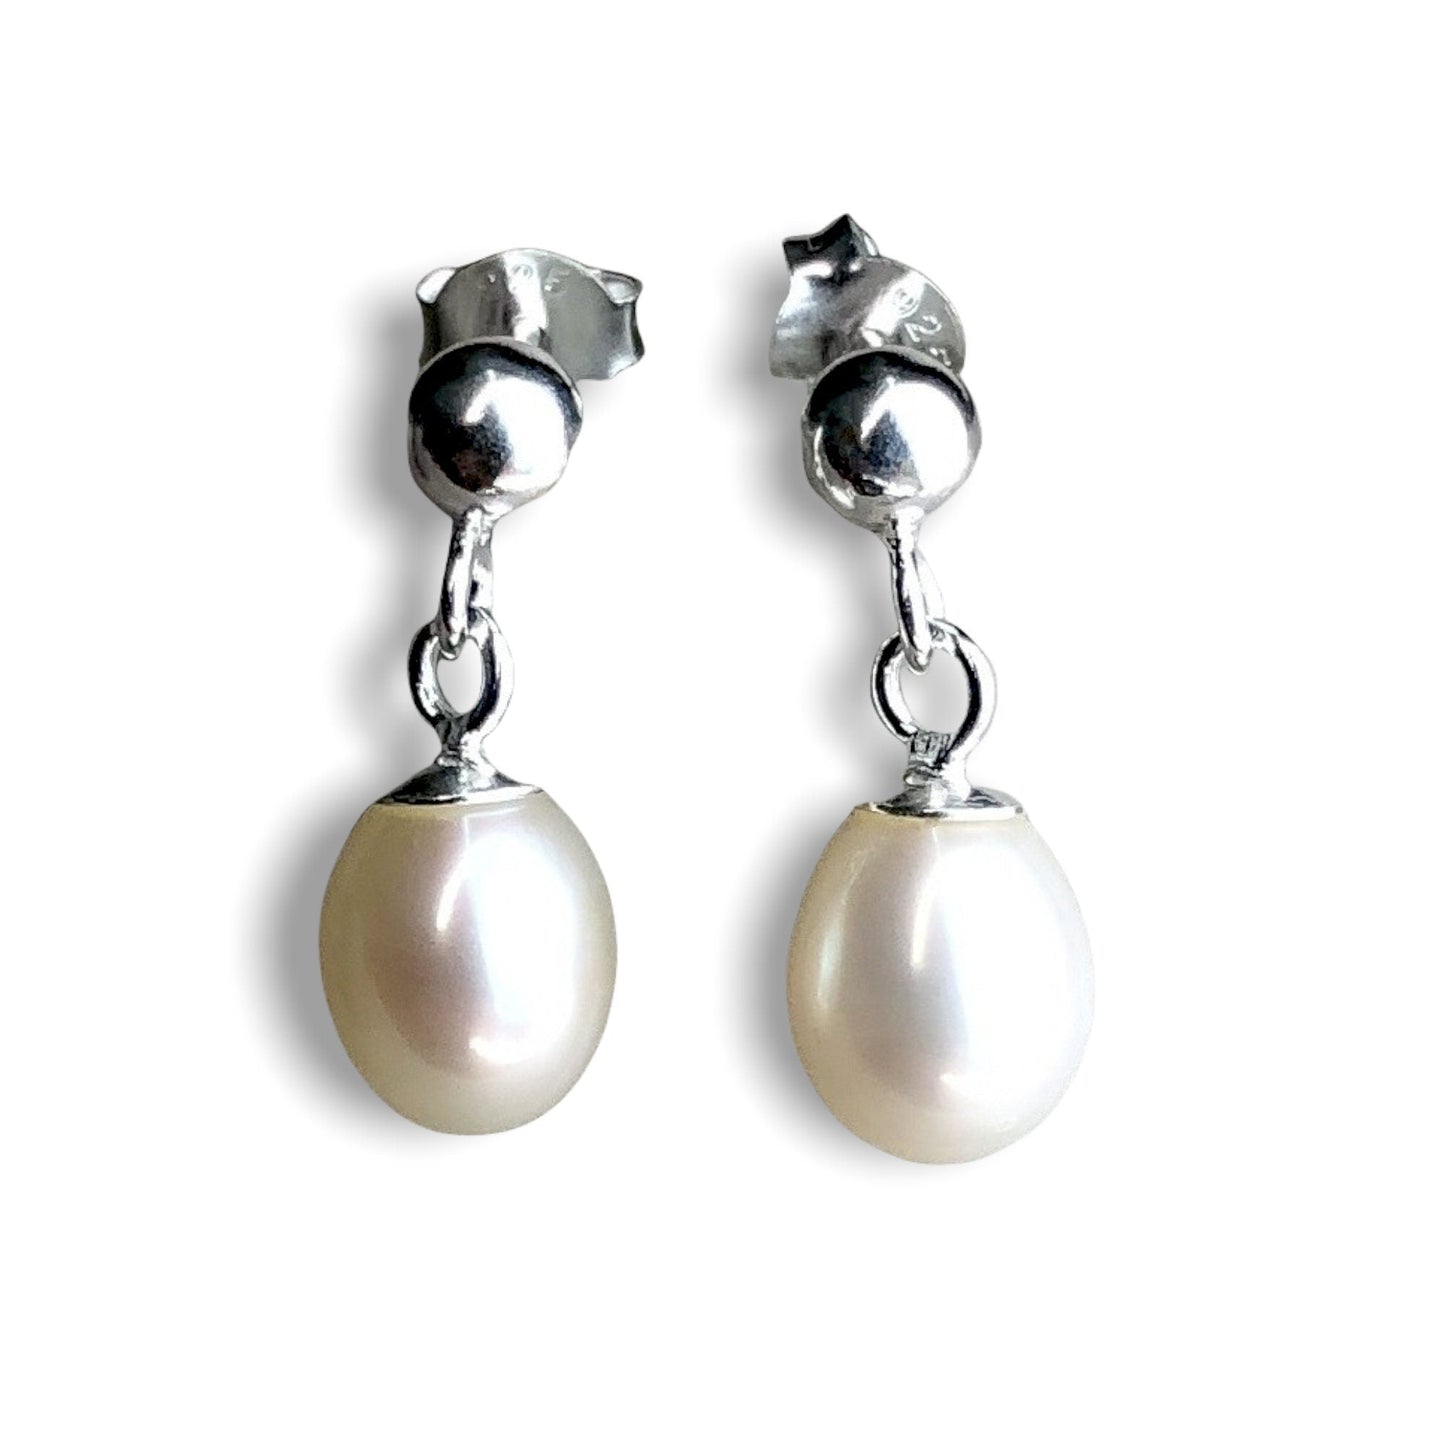 Classic Beads Earrings - 925 Sterling Silver Luxurious Pearl Earrings - Ear925-67